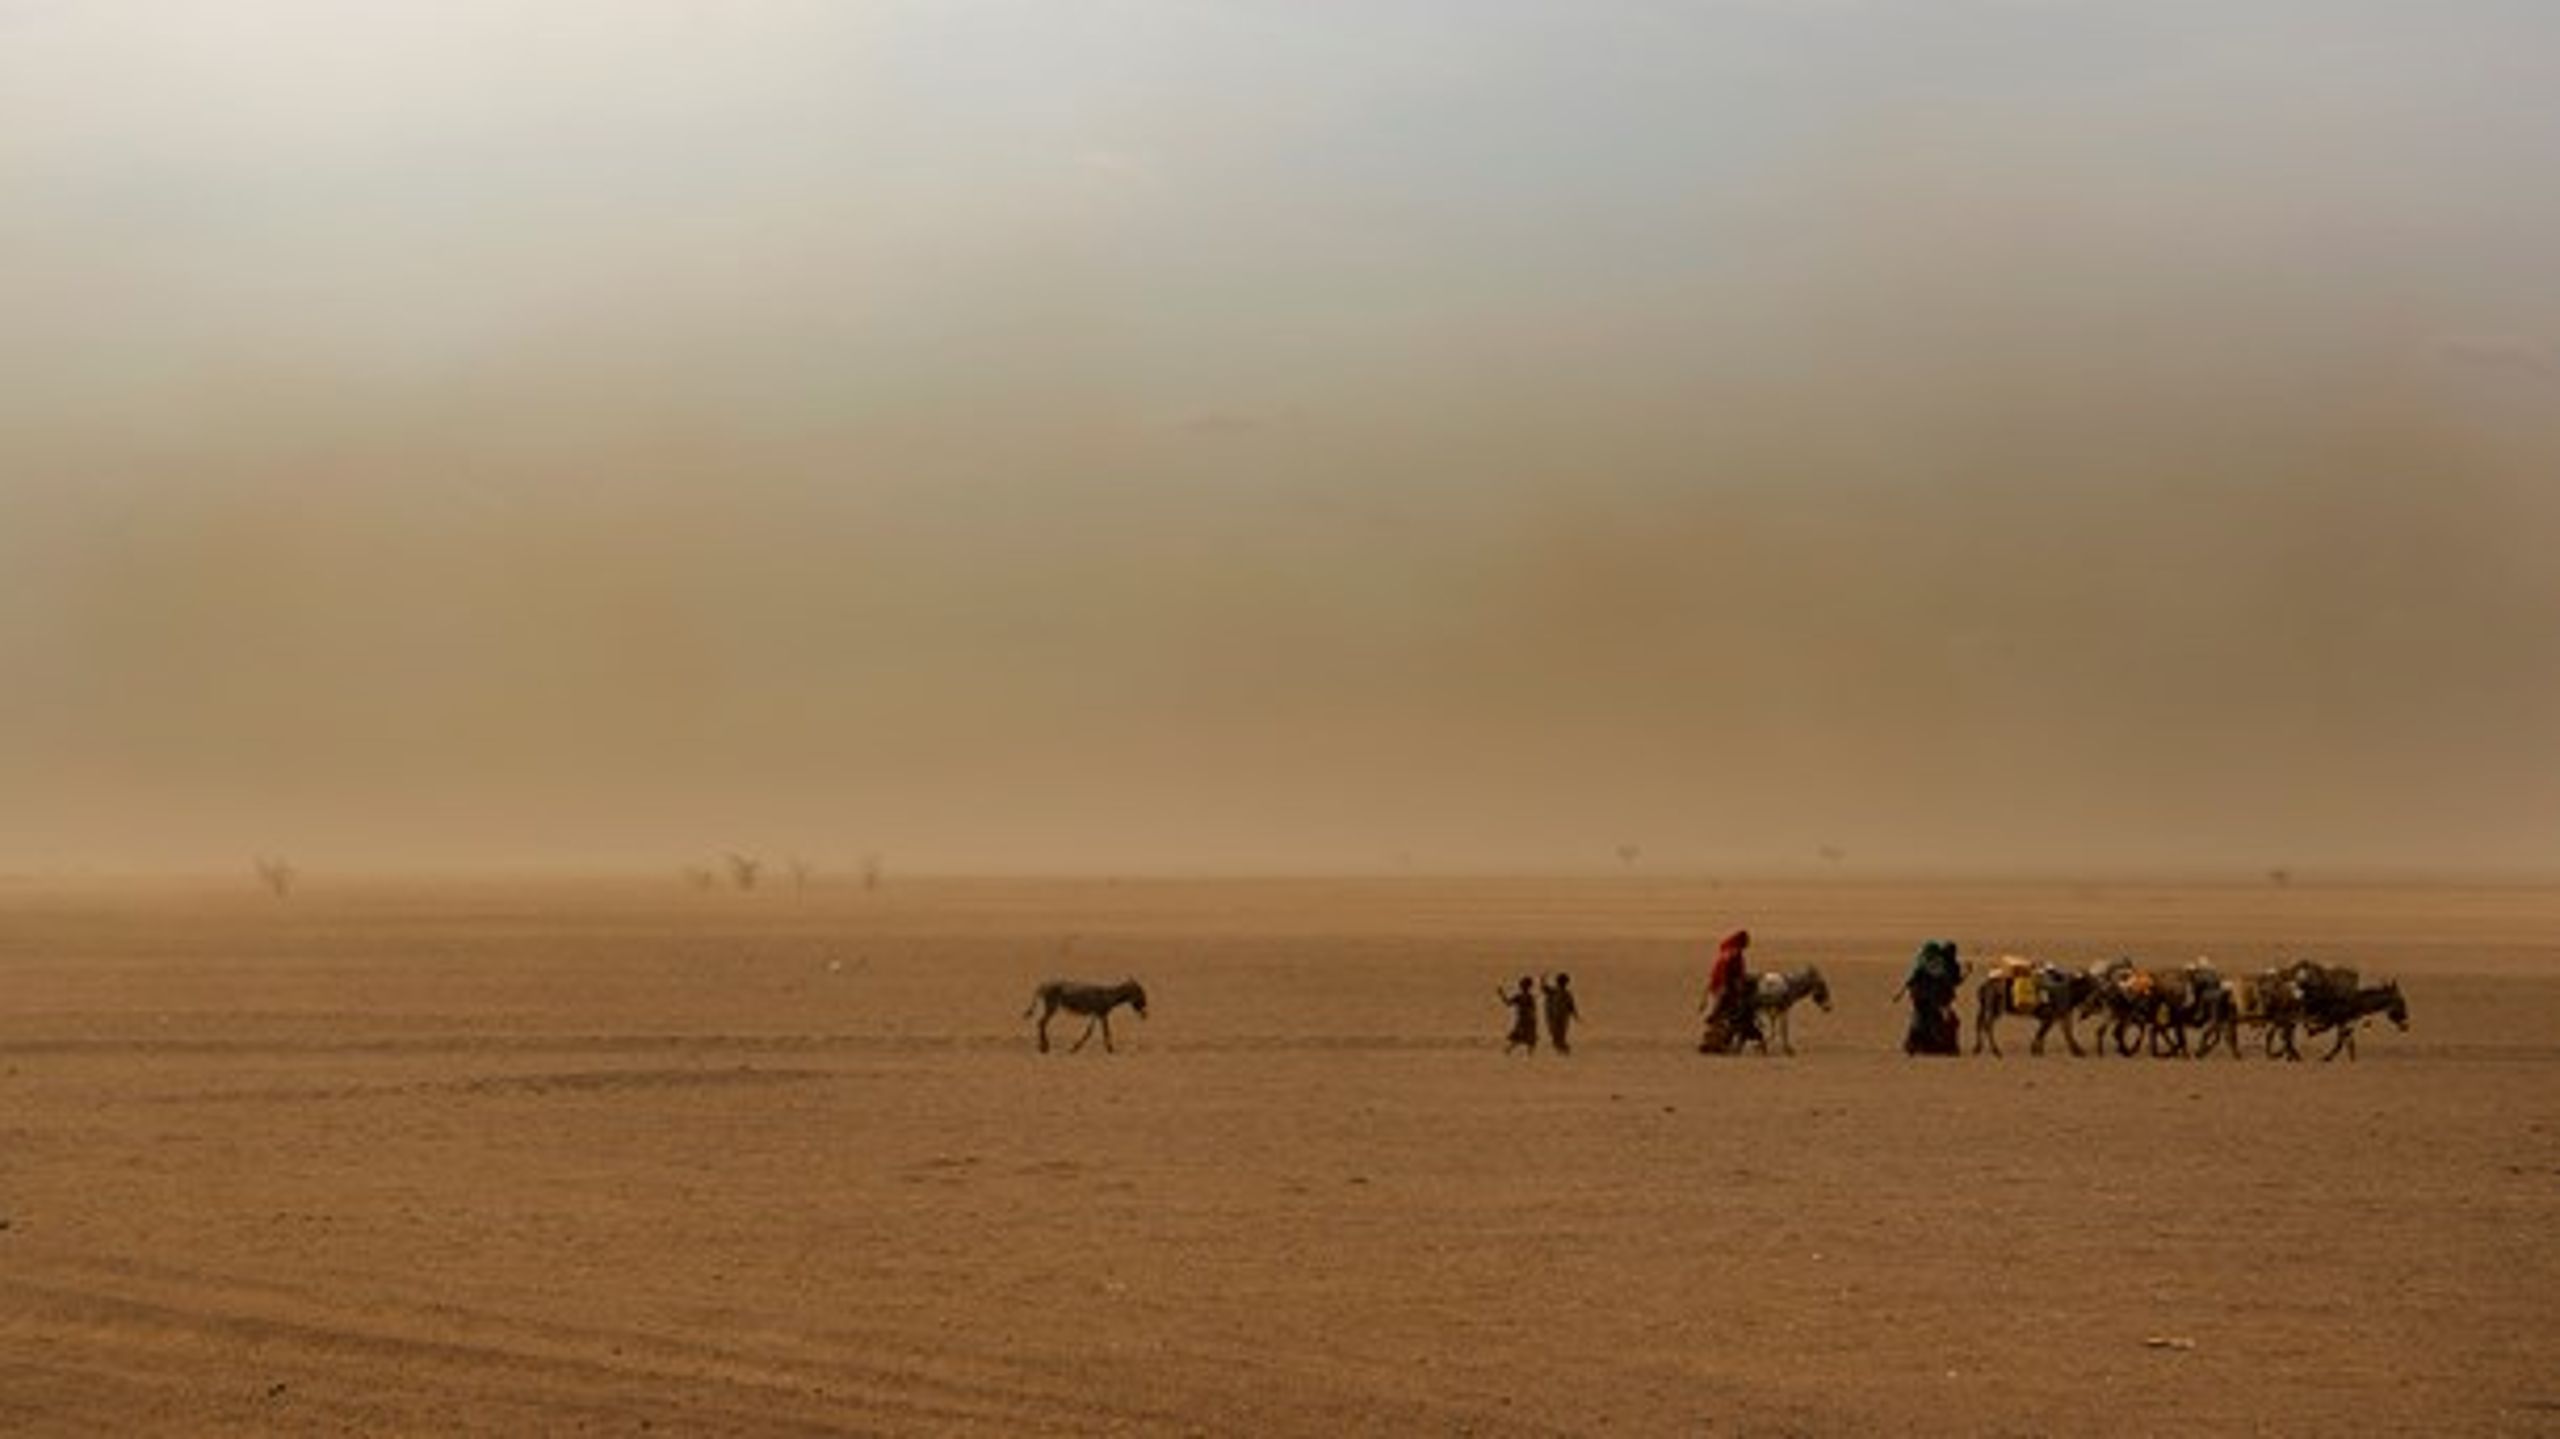 I Etiopien regner man med, at en halv million mennesker er internt fordrevne på grund af klimaforandringer.